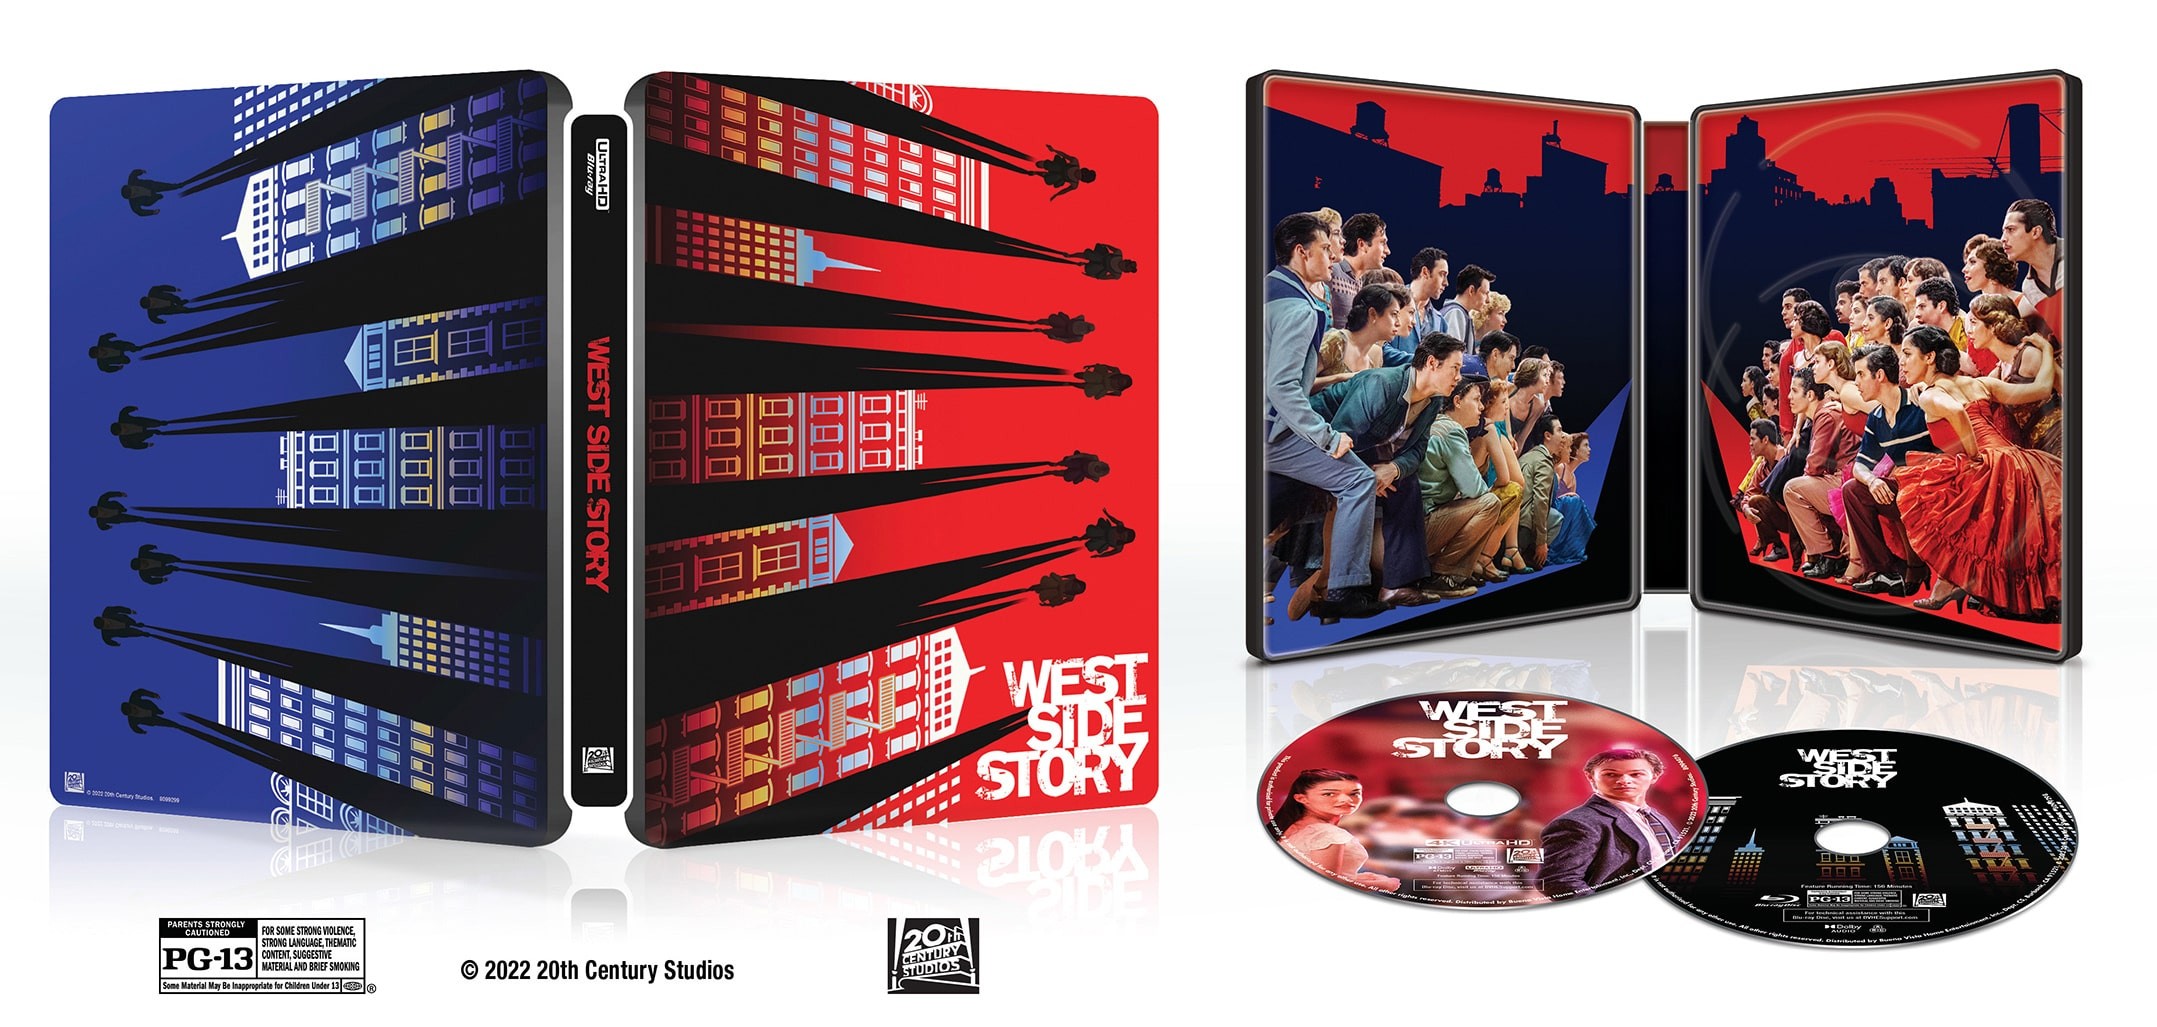 West Side Story steelbook 4K UHD